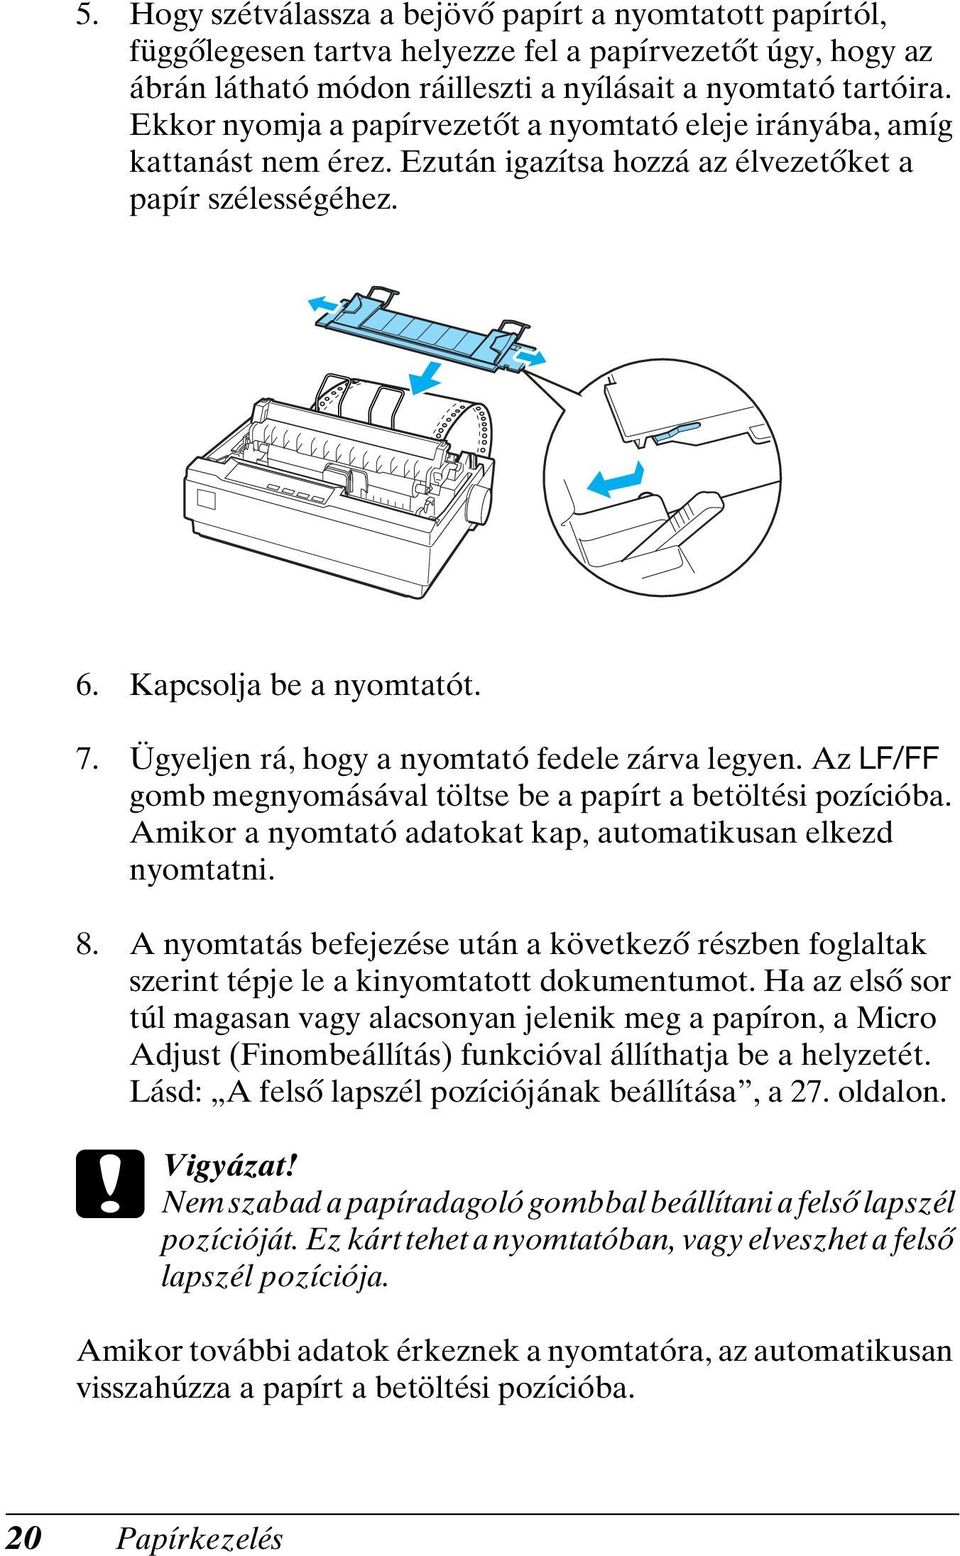 Ügyeljen rá, hogy a nyomtató fedele zárva legyen. Az LF/FF gomb megnyomásával töltse be a papírt a betöltési pozícióba. Amikor a nyomtató adatokat kap, automatikusan elkezd nyomtatni. 8.